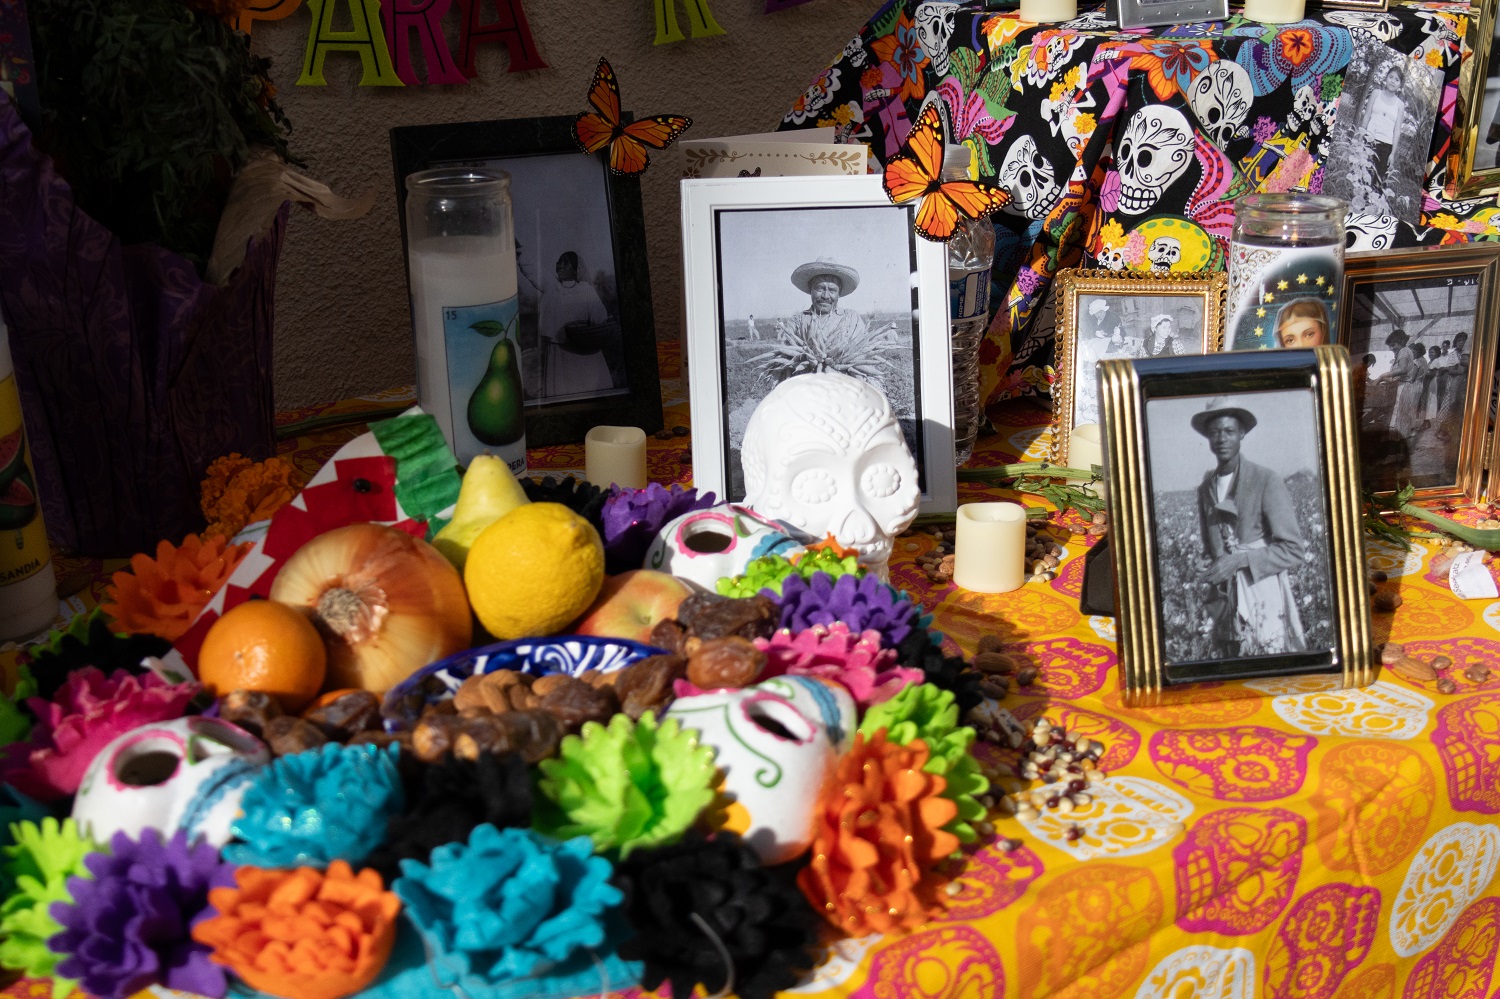 Remembering loved ones with a Dia de los Muertos ofrenda